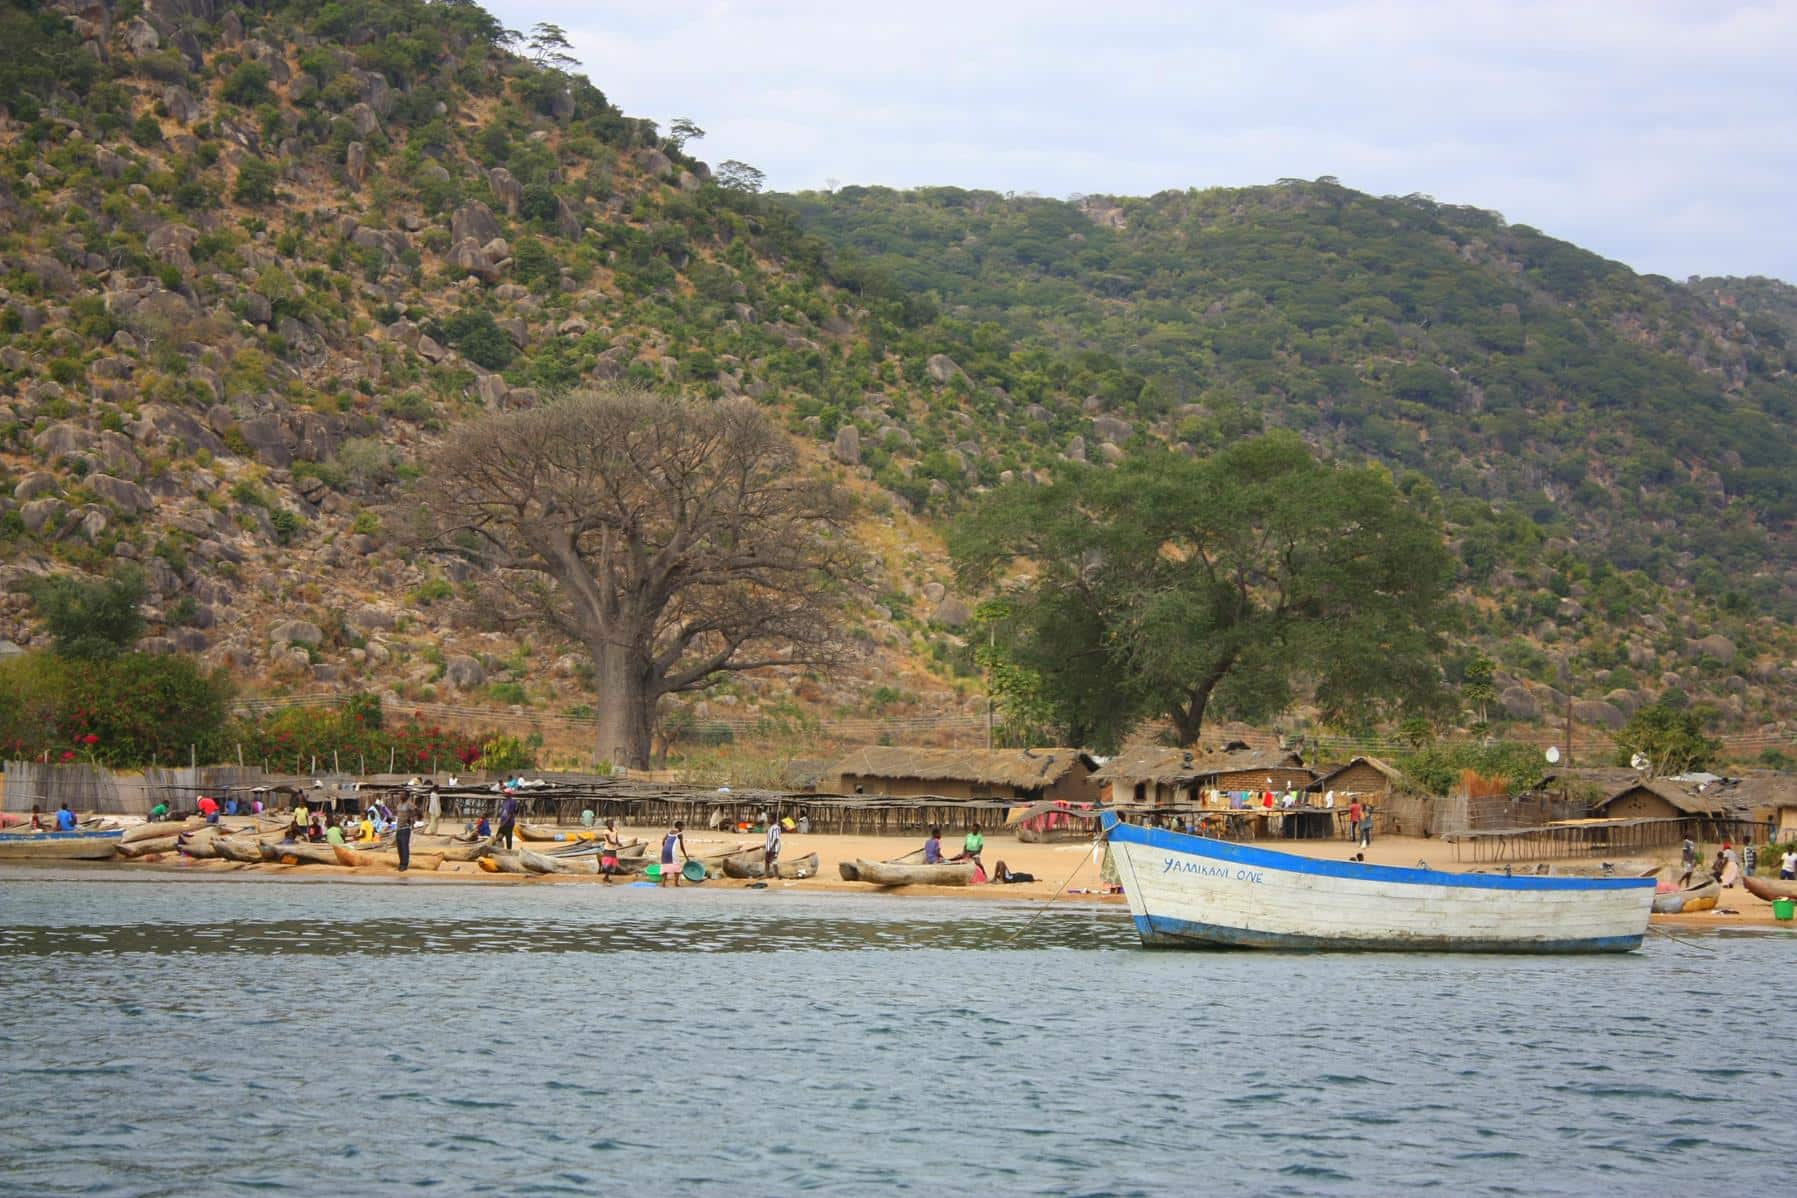 Fishing boats on Lake Malawi.